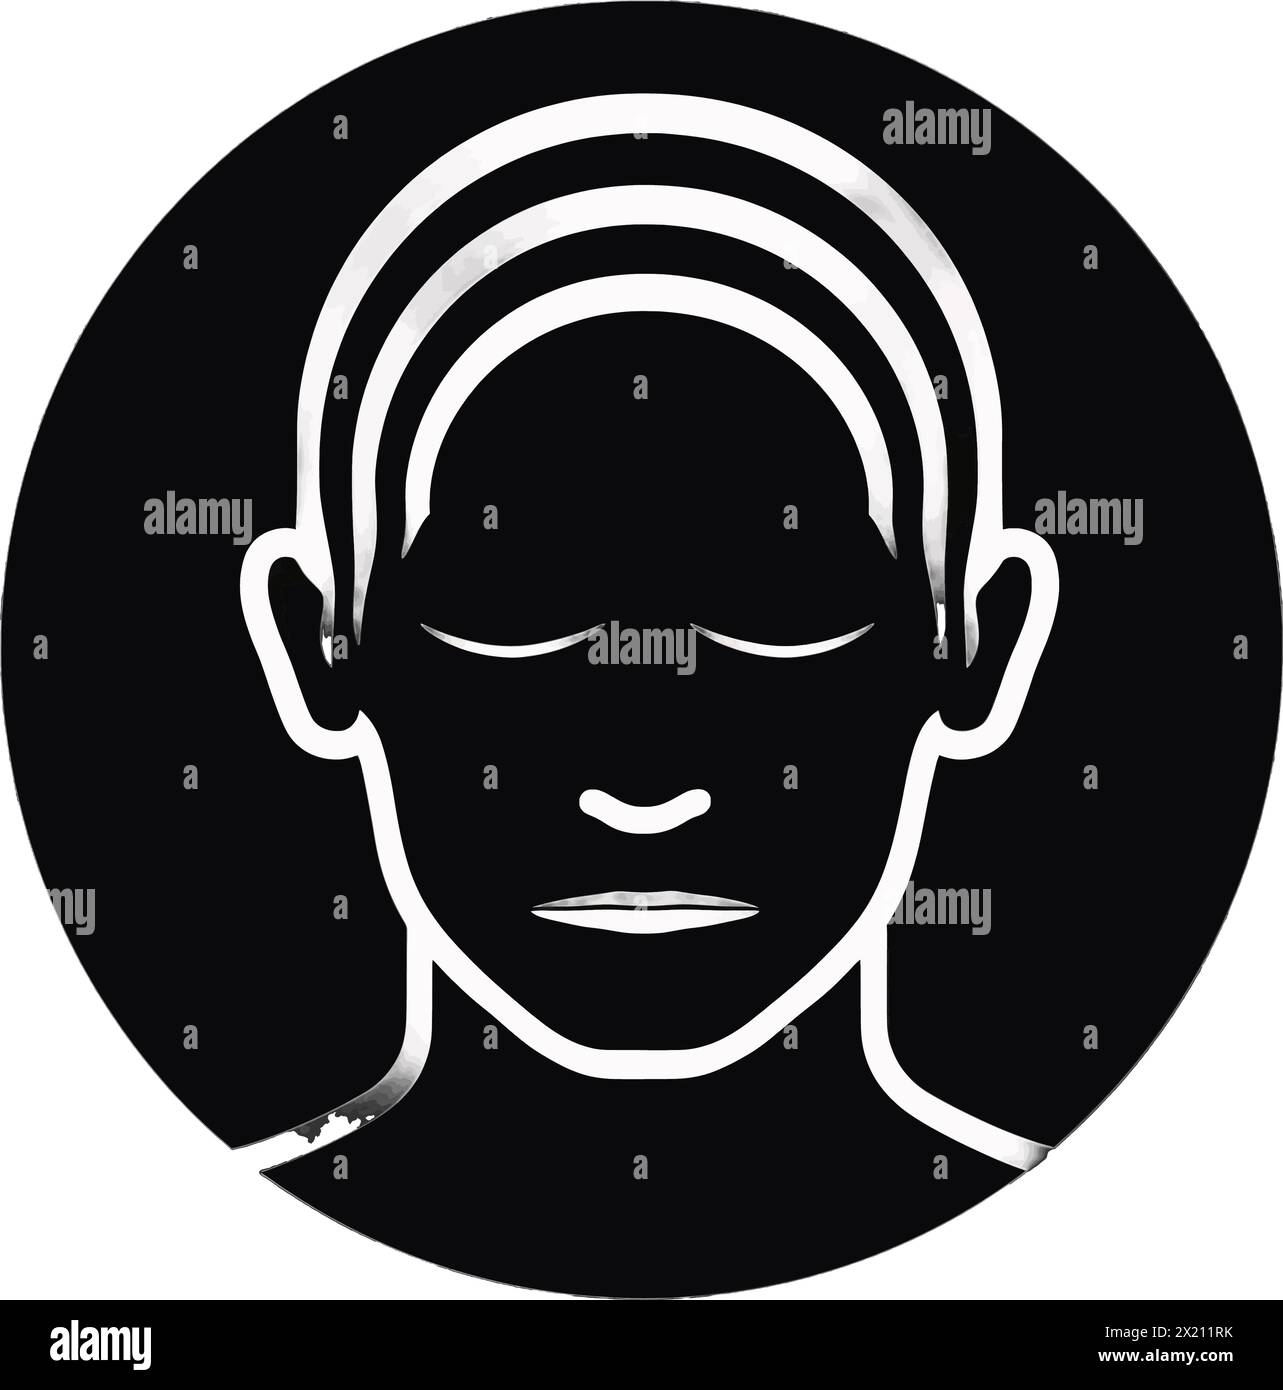 Illustration vectorielle d'un visage de femme abstrait dans un cercle en silhouette noire sur un fond blanc propre, capturant les formes gracieuses de ce vecto Illustration de Vecteur